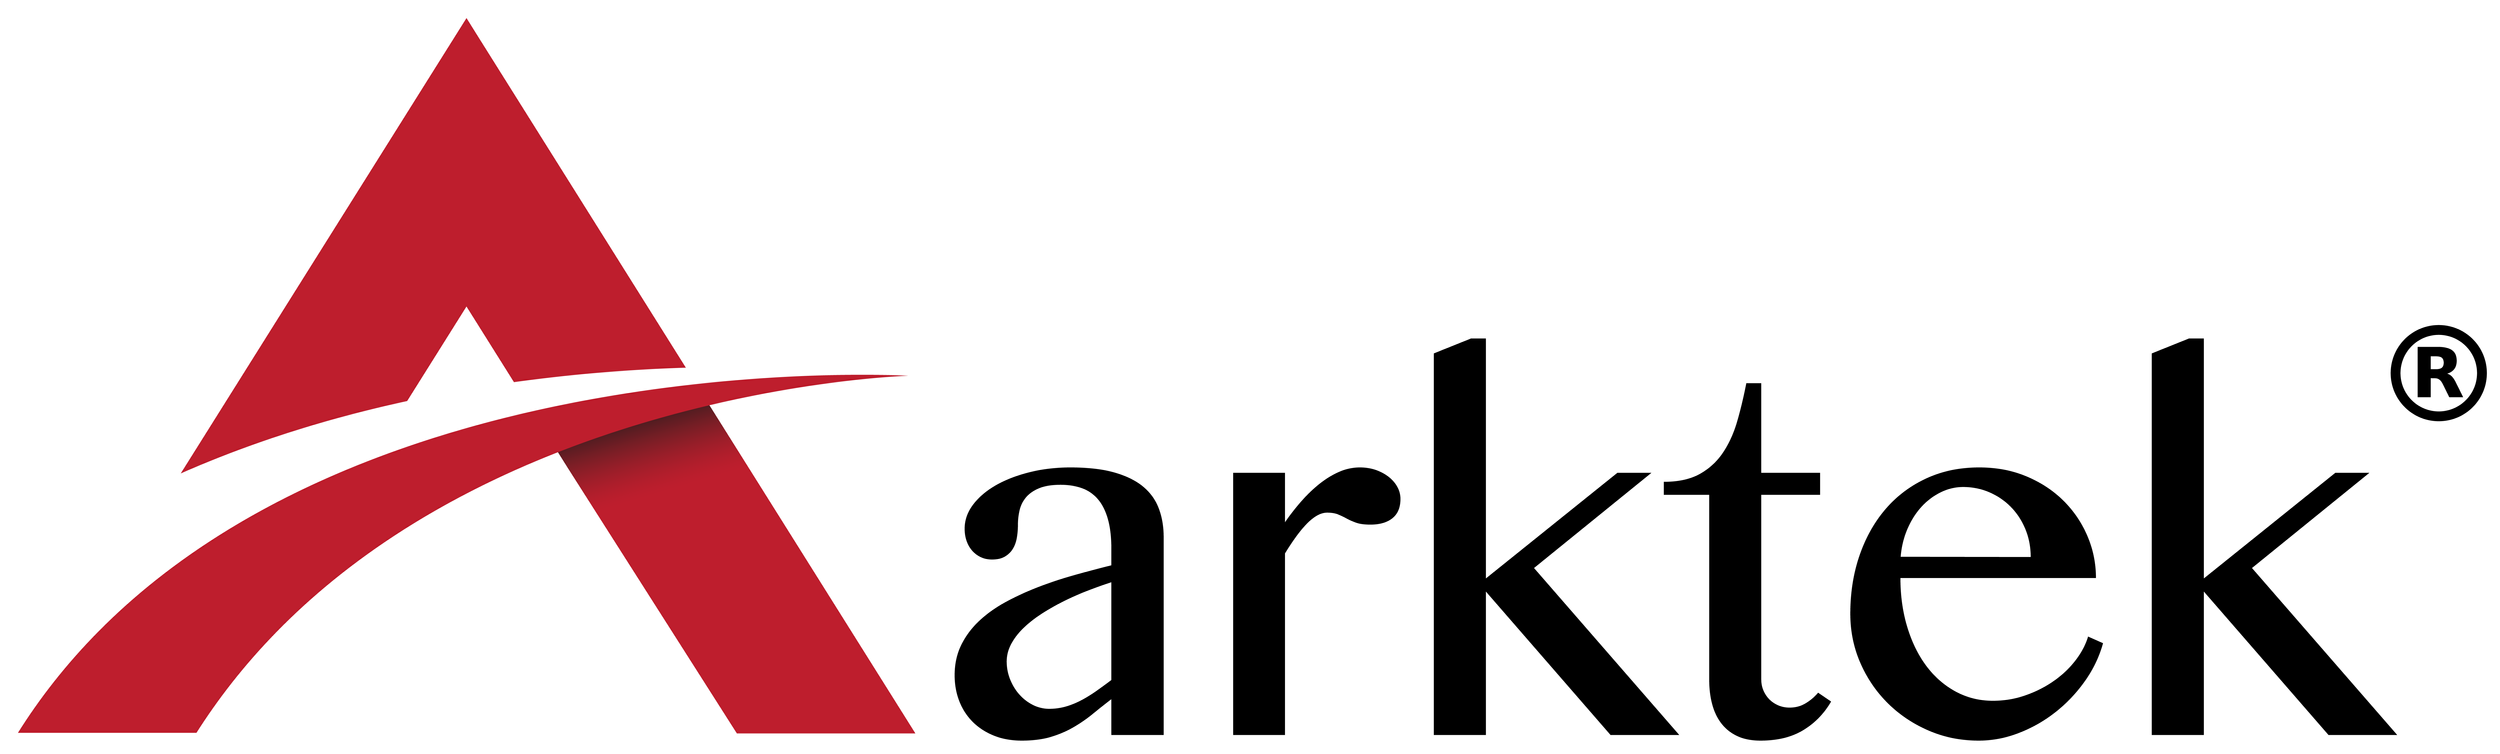 Arktek logo